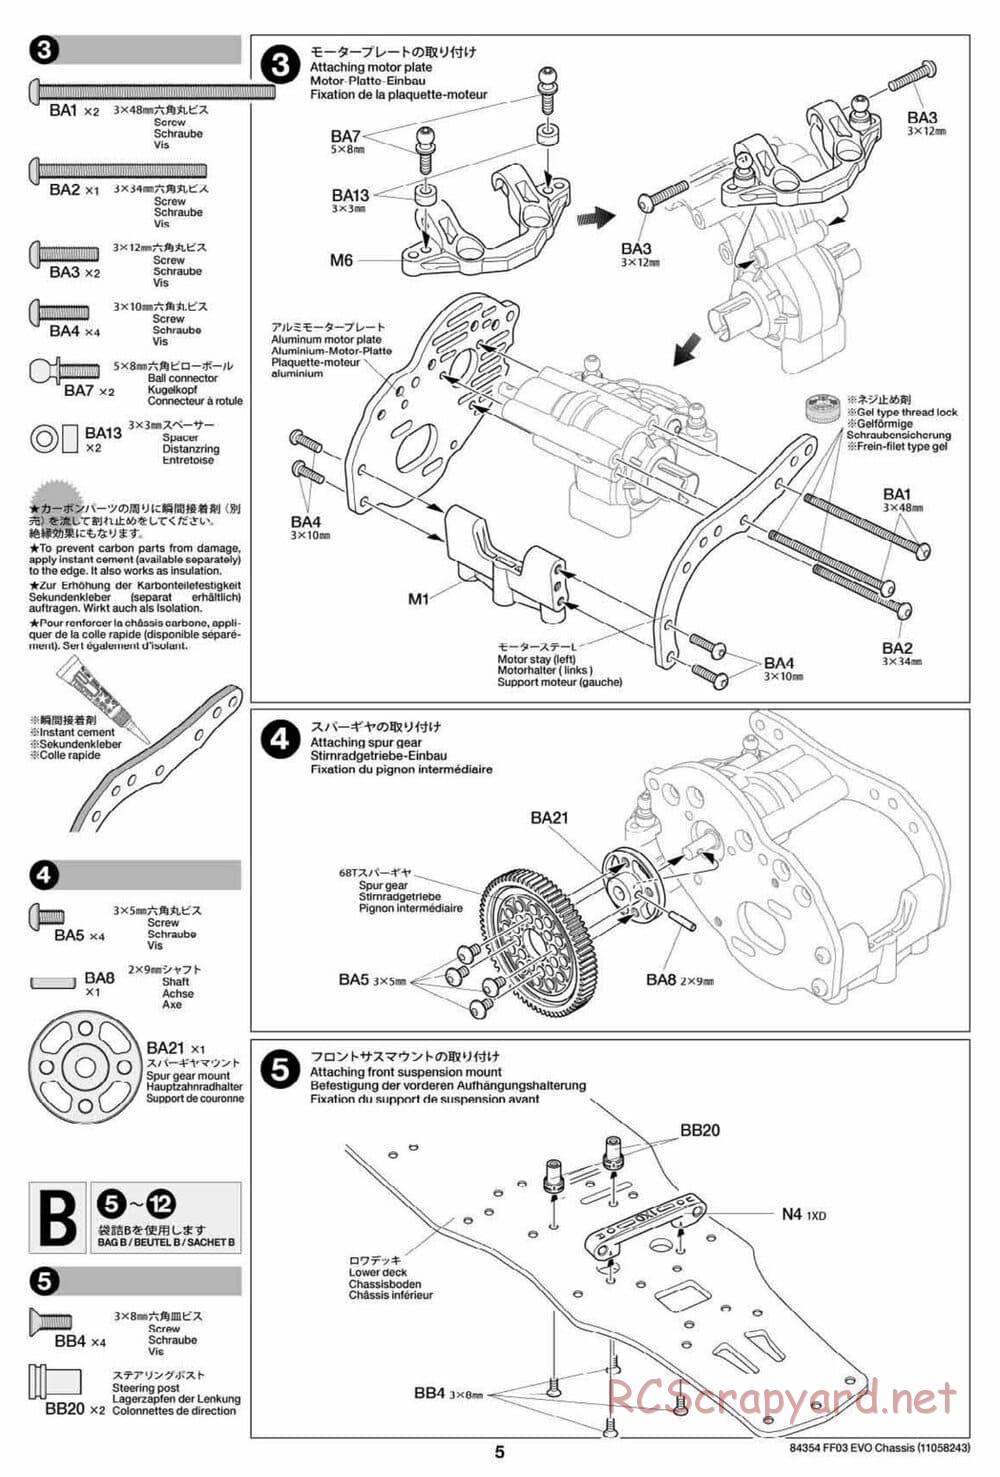 Tamiya - FF-03 Evo Chassis - Manual - Page 5